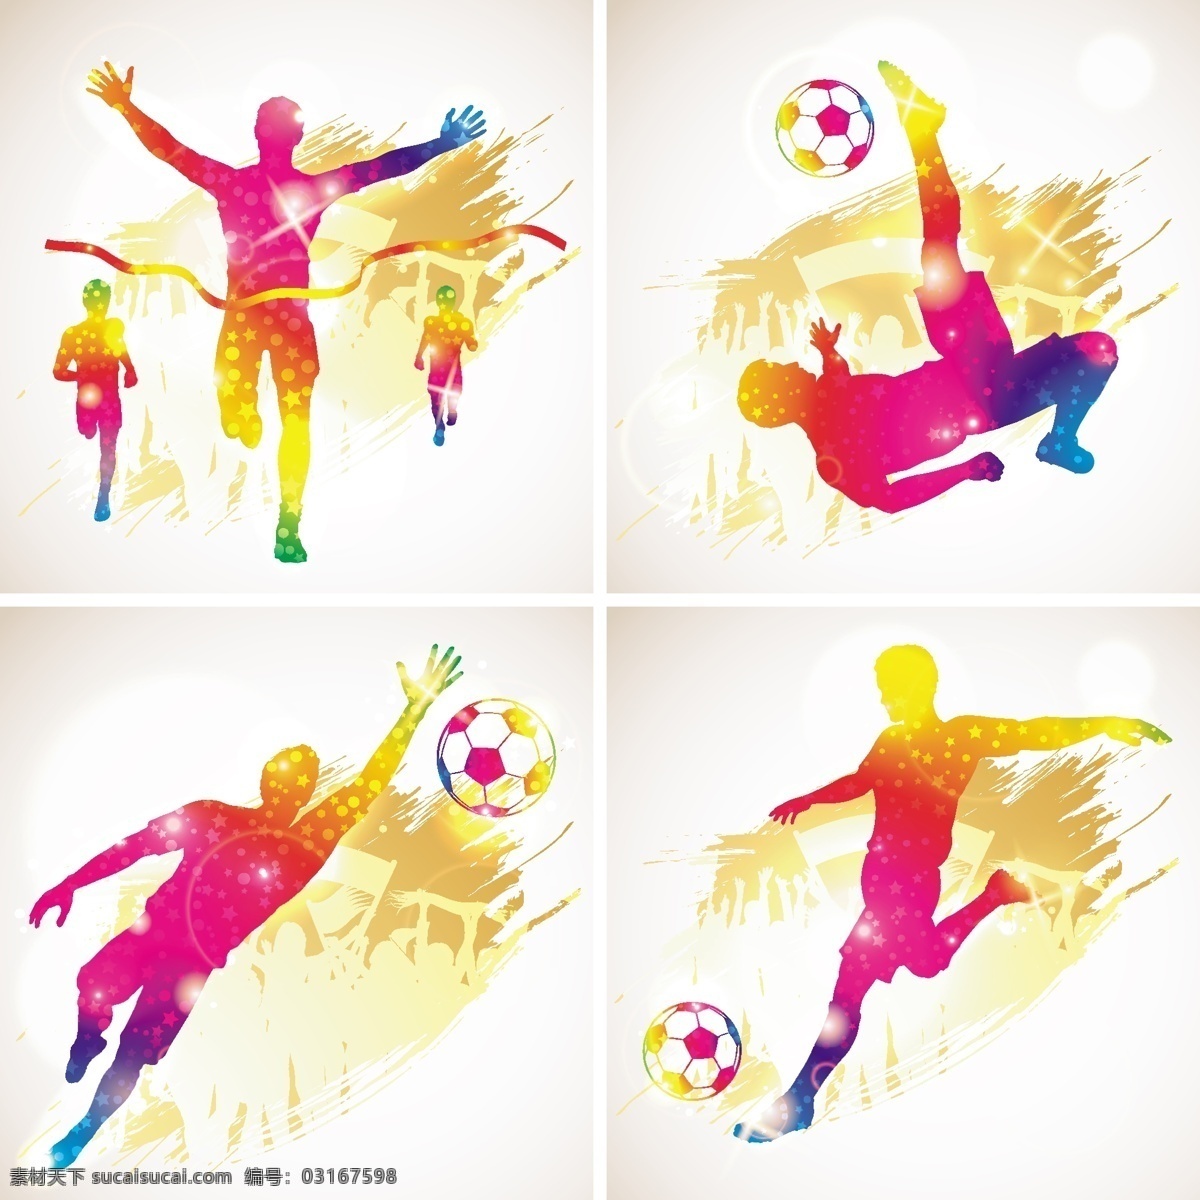 世界杯 足球 主题 插图 足球运动 球员 踢球 体育运动 生活百科 矢量素材 白色